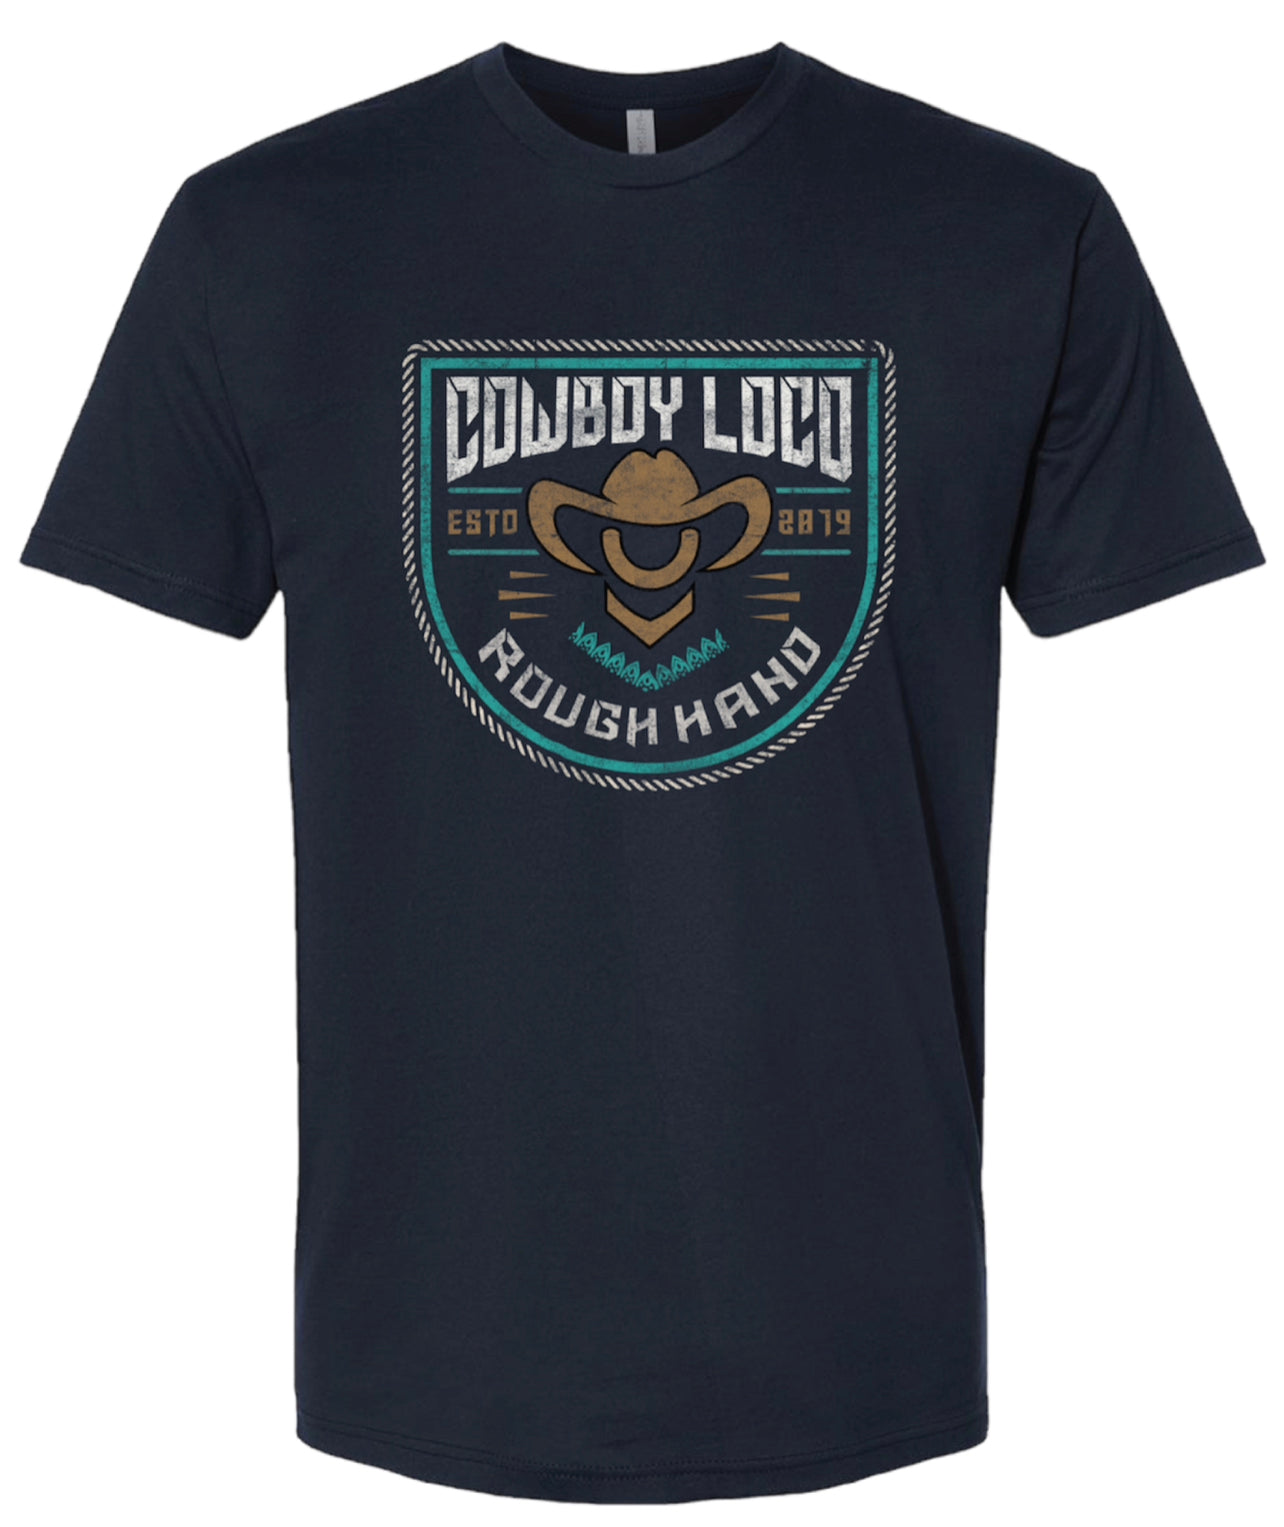 Cowboy Loco T - RoughHand